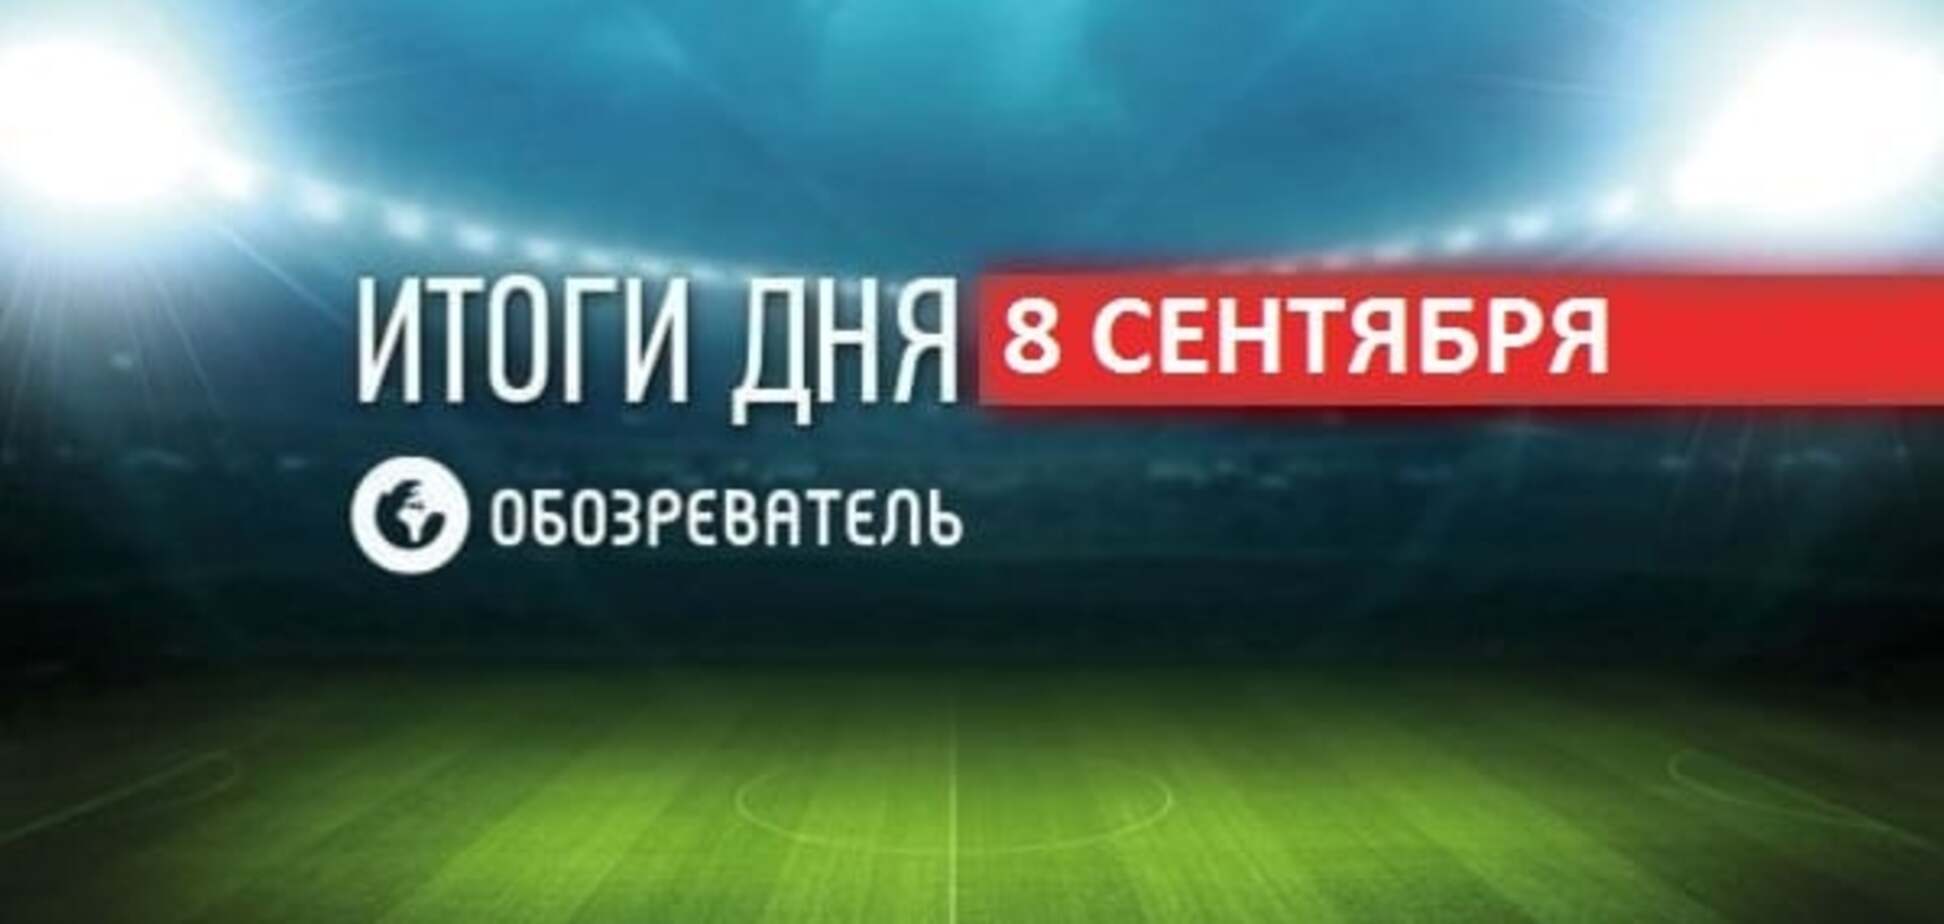 Паралімпіада почалася зі скандалу з прапором РФ: спортивні підсумки 8 вересня